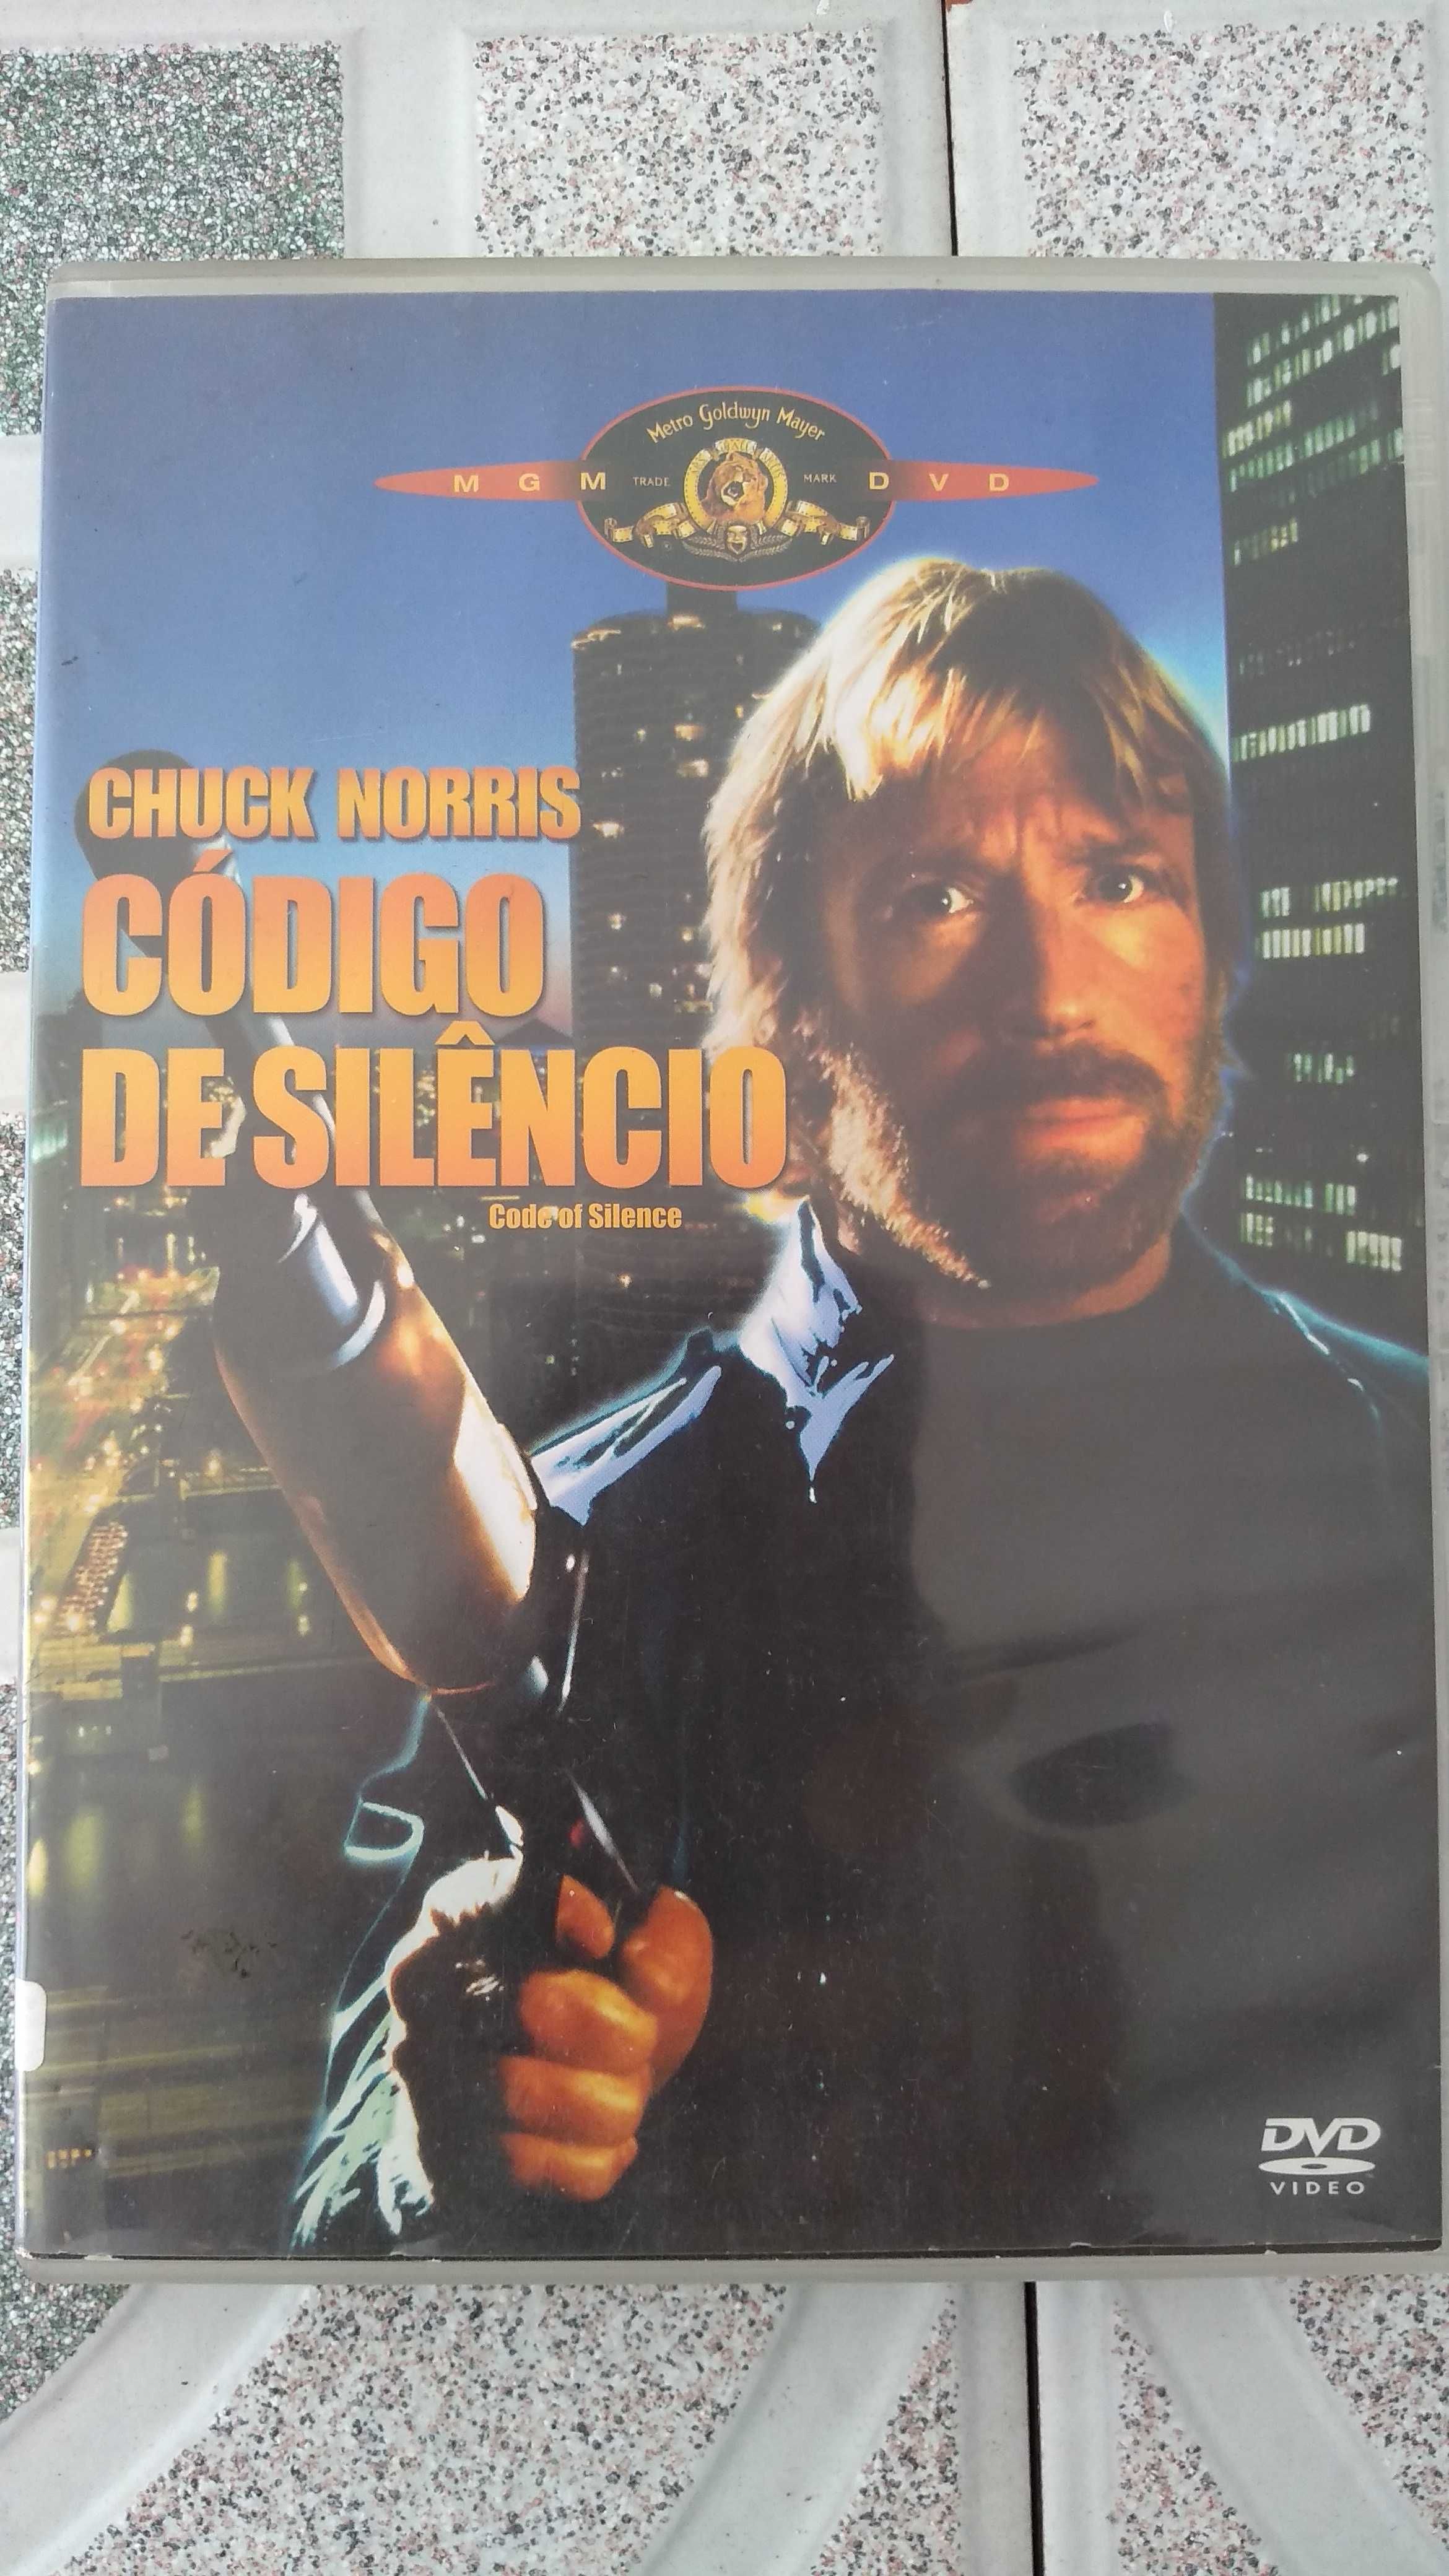 Vendo DVD código de silêncio Chuck Norris